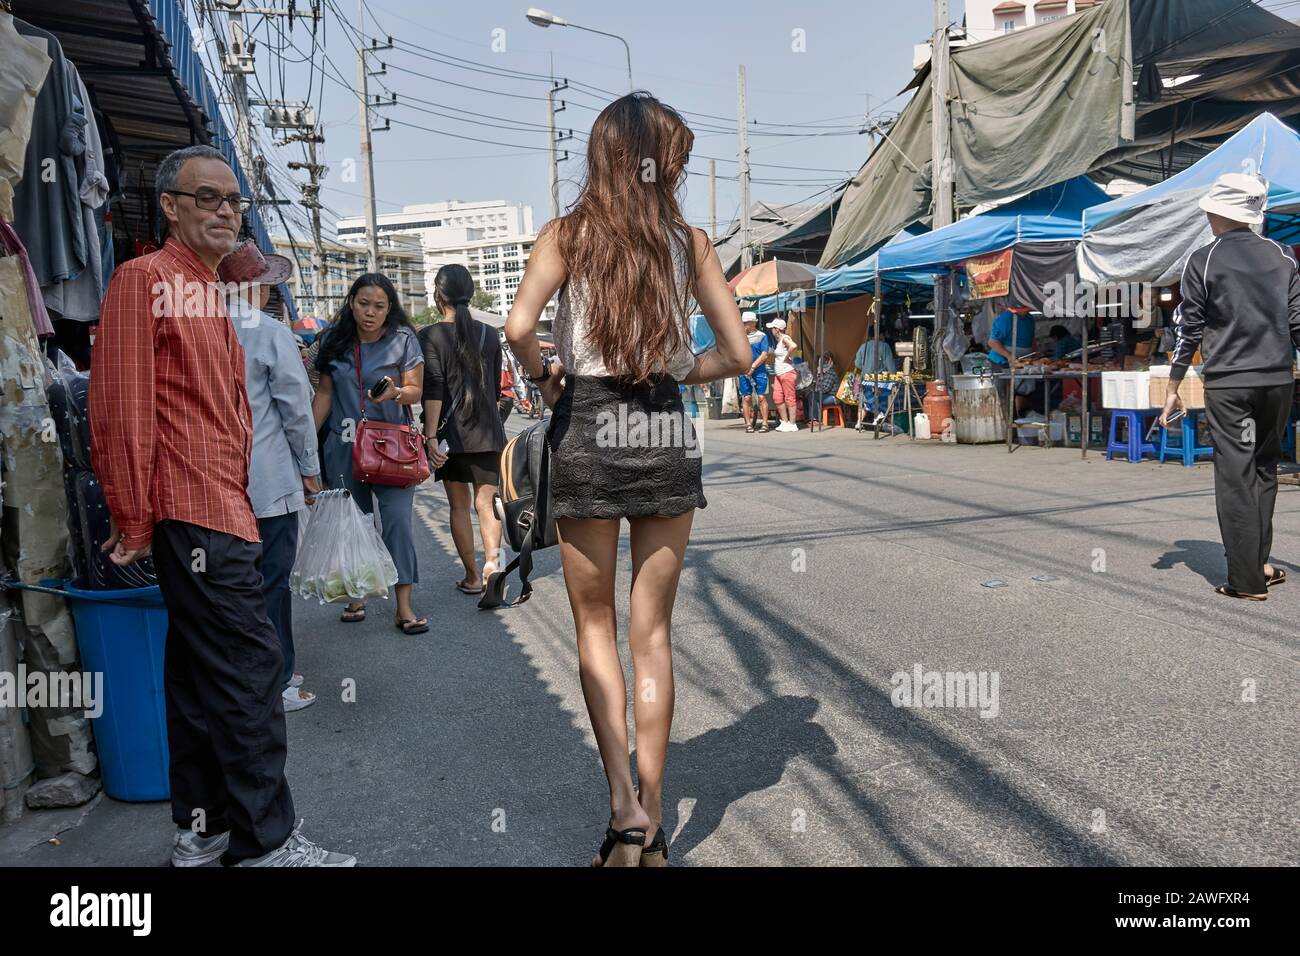 Frau trägt einen Minirock zieht einen flüchtigen Blick von männlichen Bewunderer; Thailand Straße Stockfoto